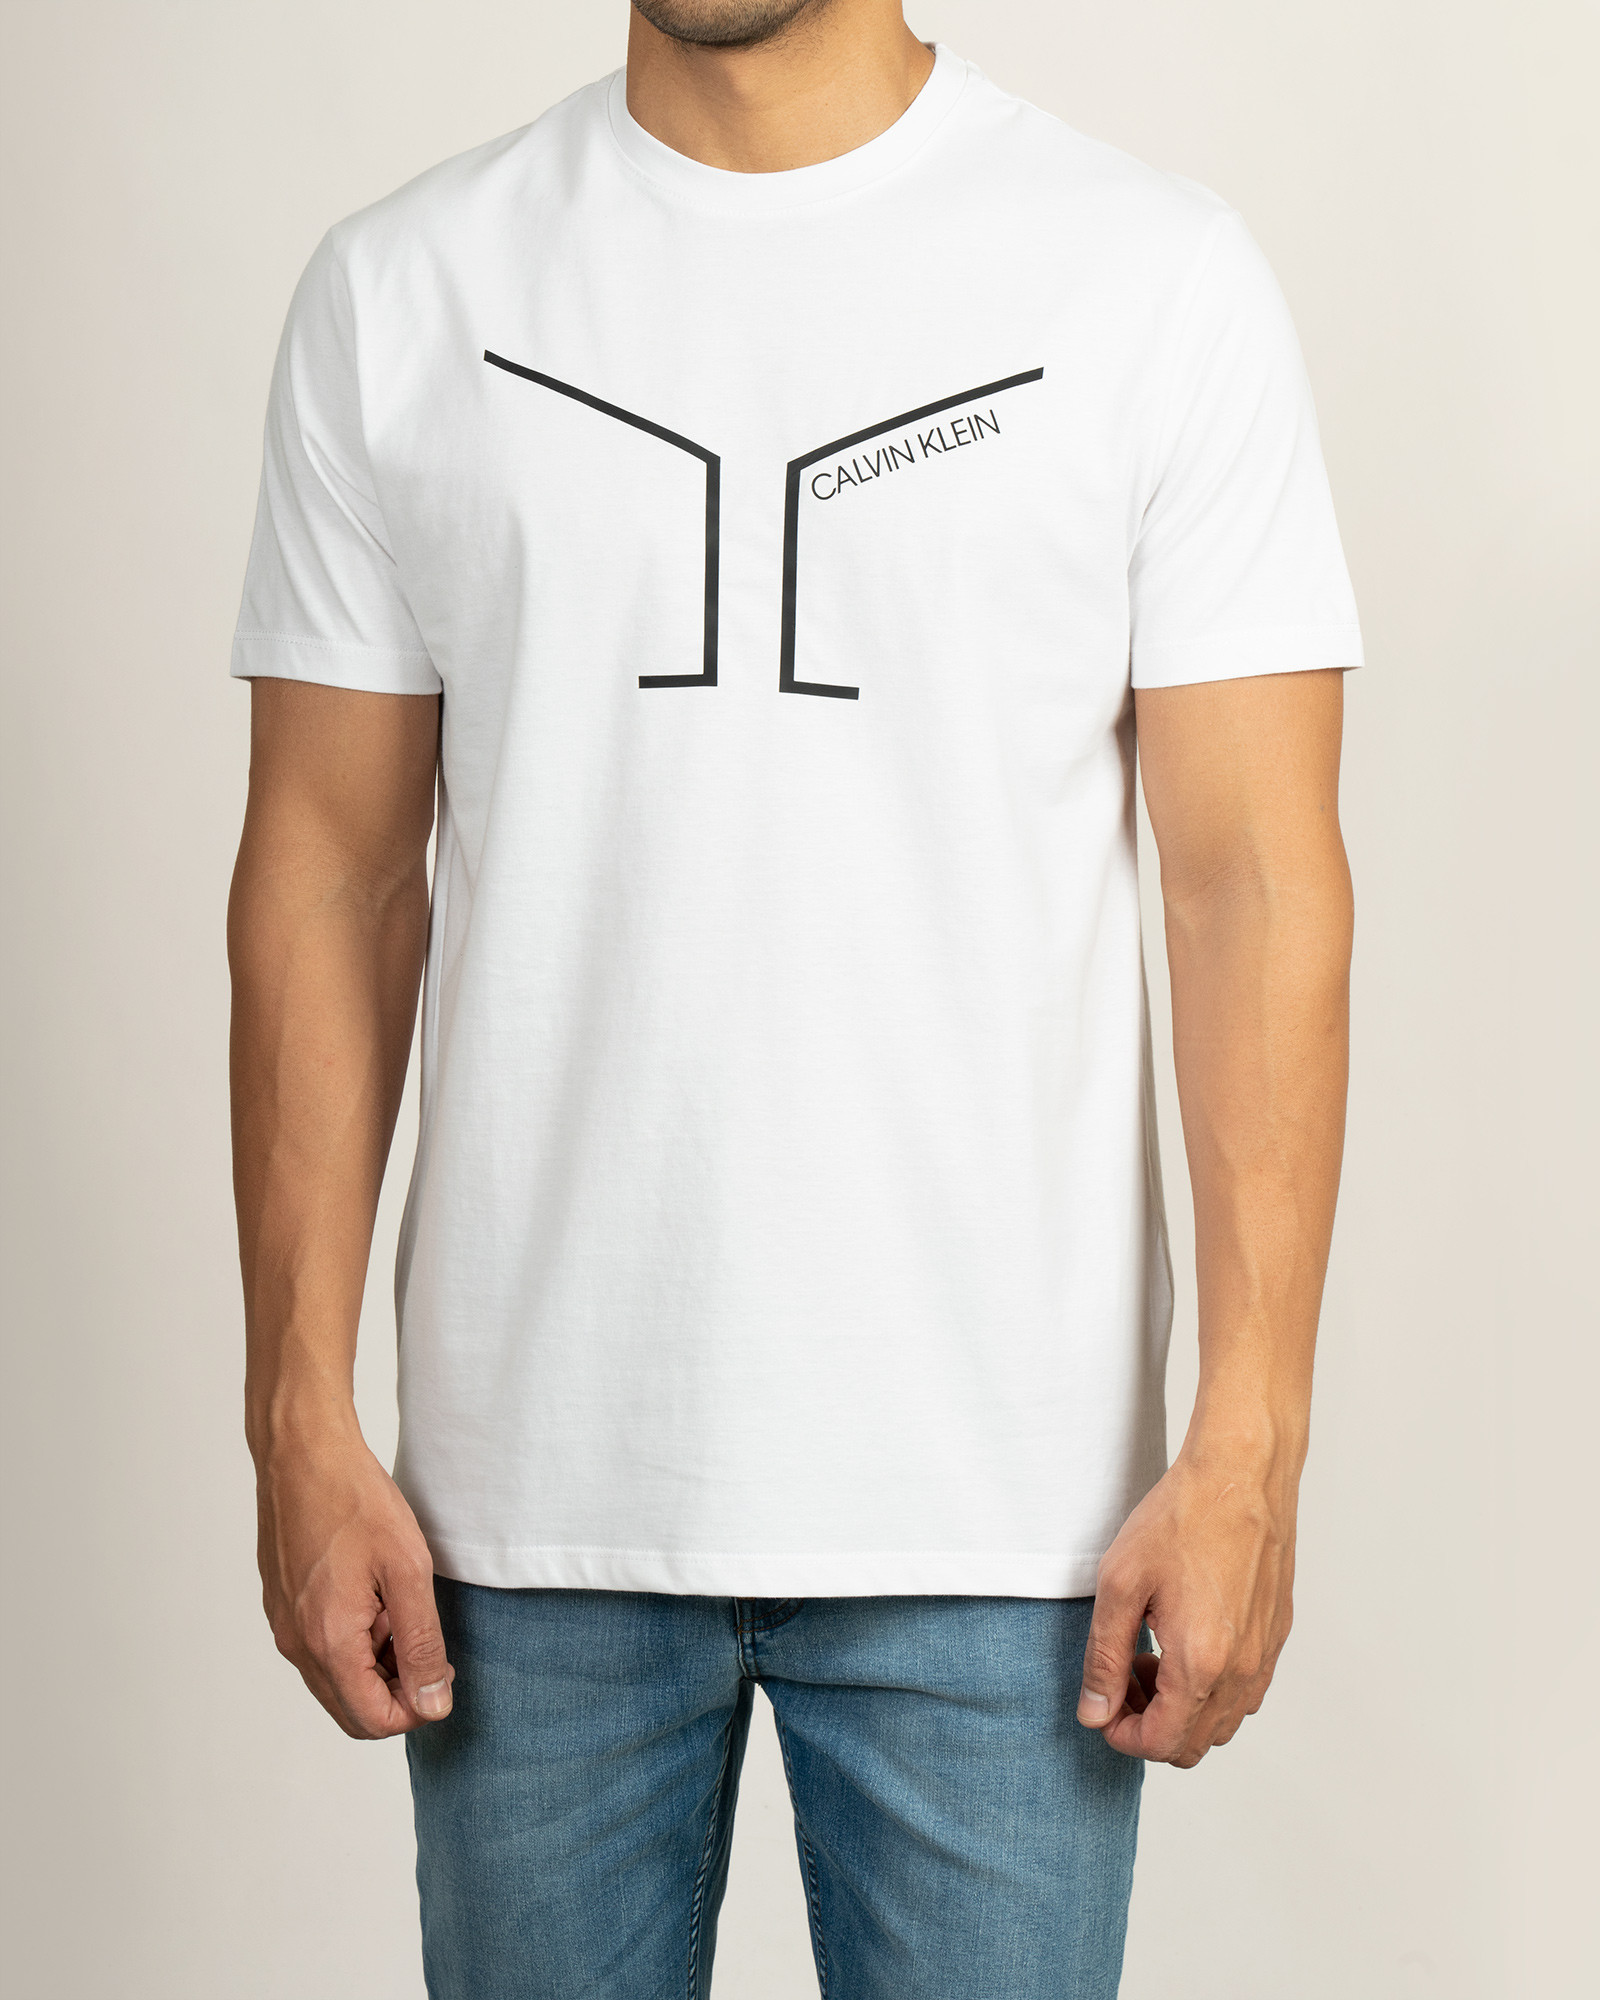 خرید اینترنتی تیشرت سفید چاپ دار مردانه 21196210